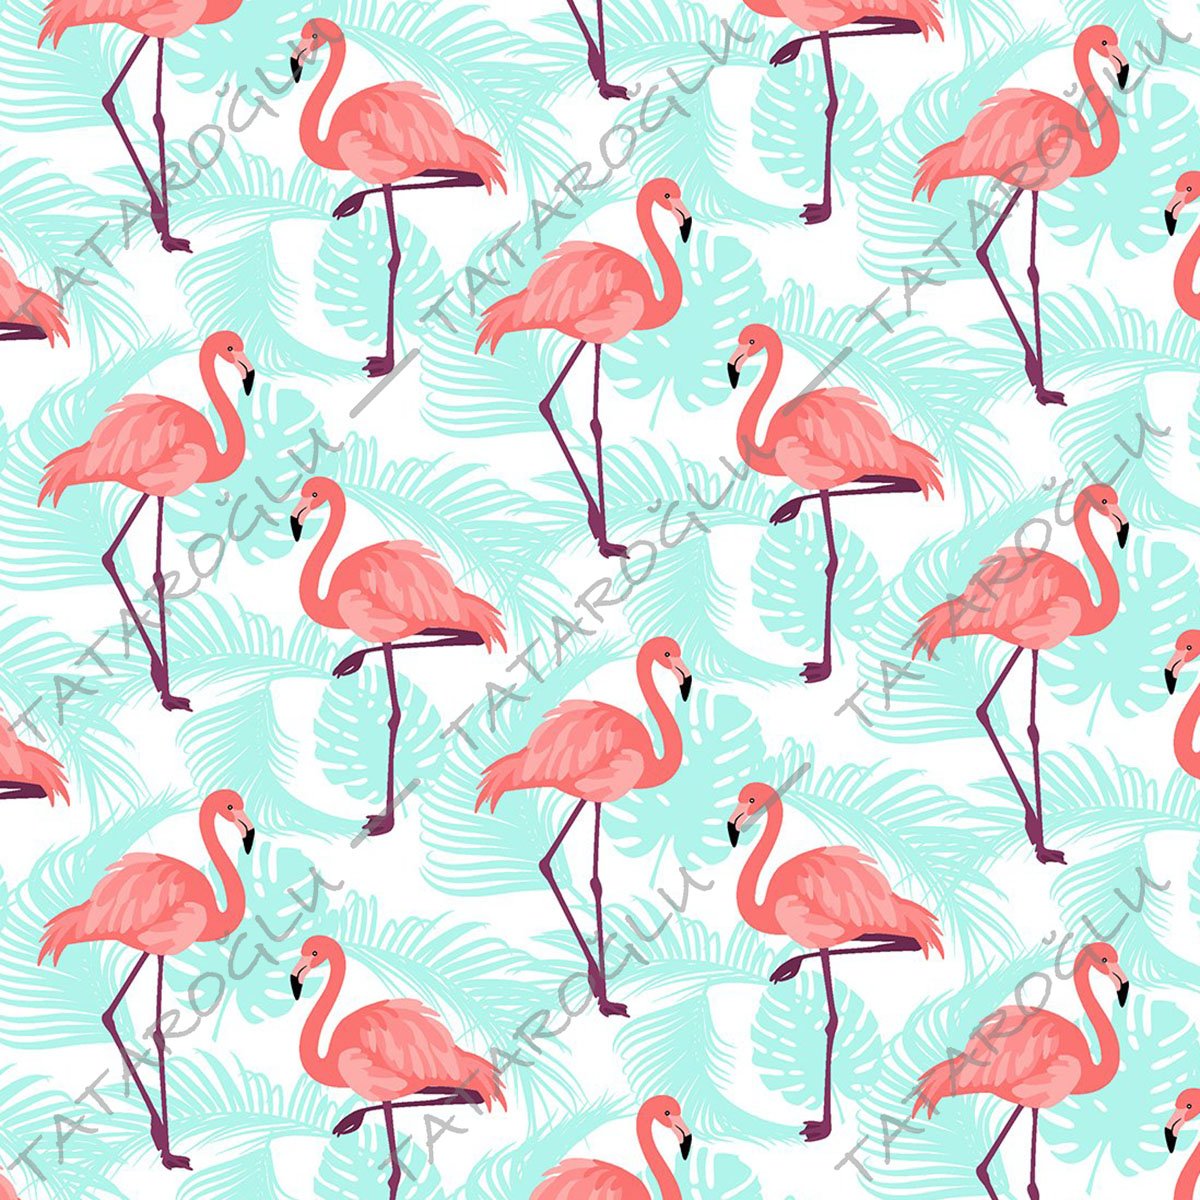 Tropikal Serisi-Turkuaz Yaprak Üzerine Flamingo Desenli Kumaş